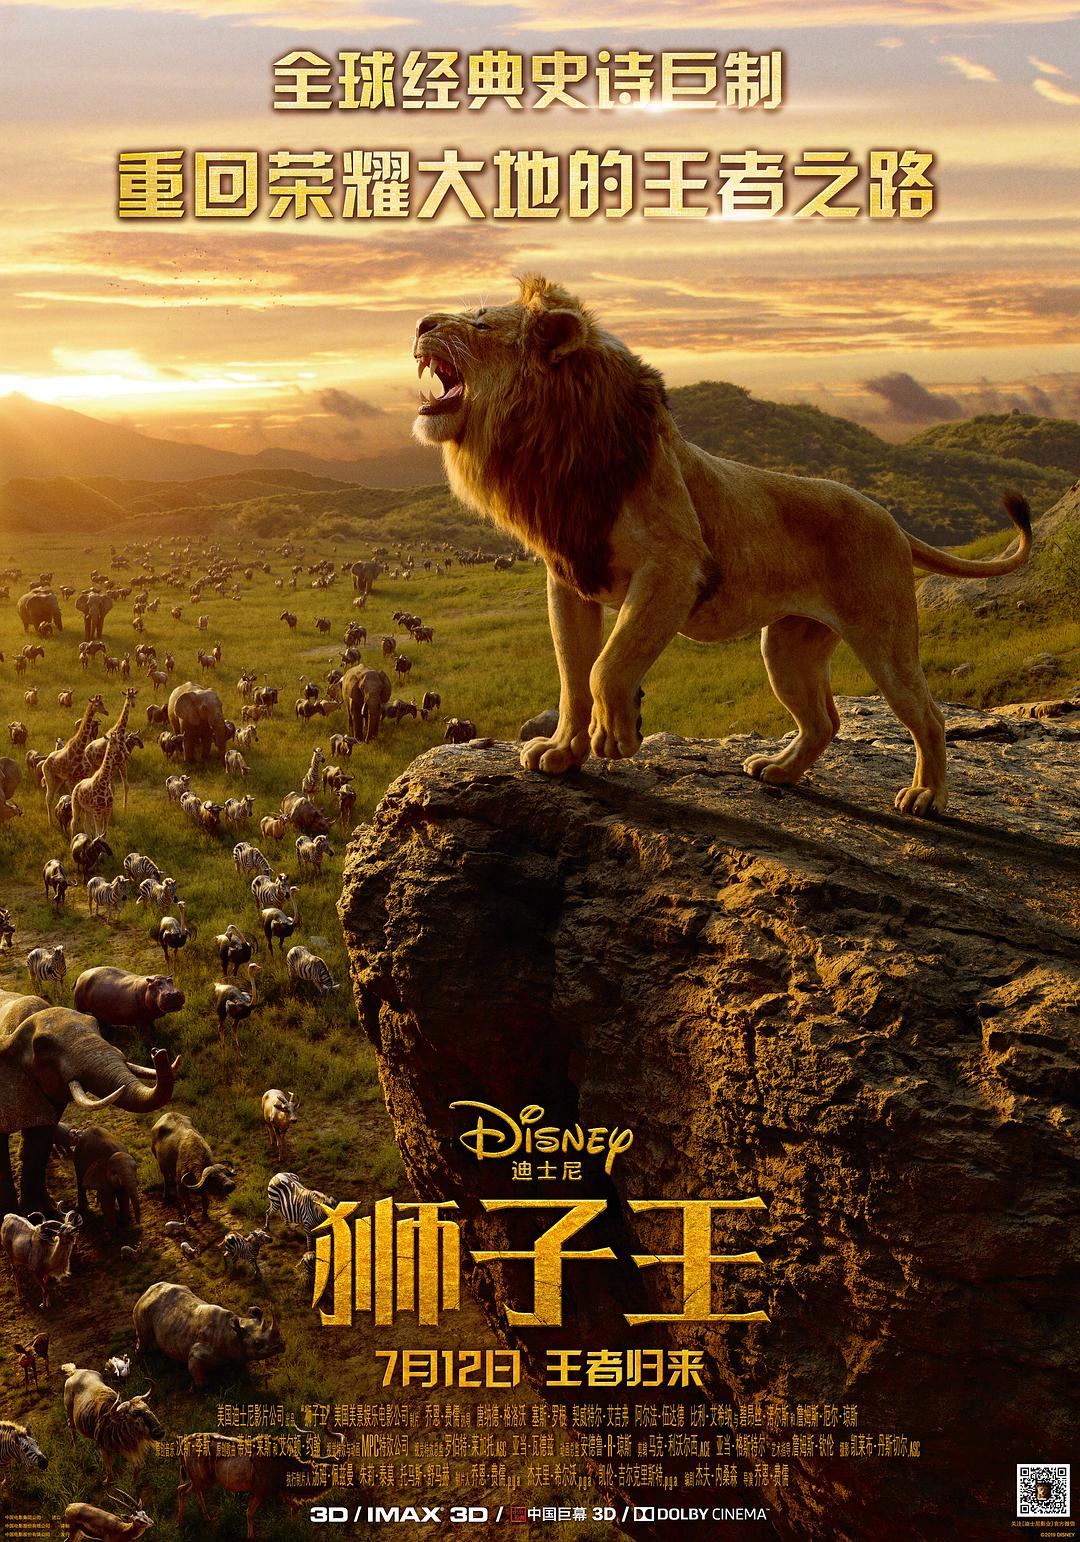 狮子王/狮子王真人版 The.Lion.King.2019.1080p.3D.BluRay.Half-OU.x264.DTS-HD.MA.7.1-FGT 20.39GB-1.png